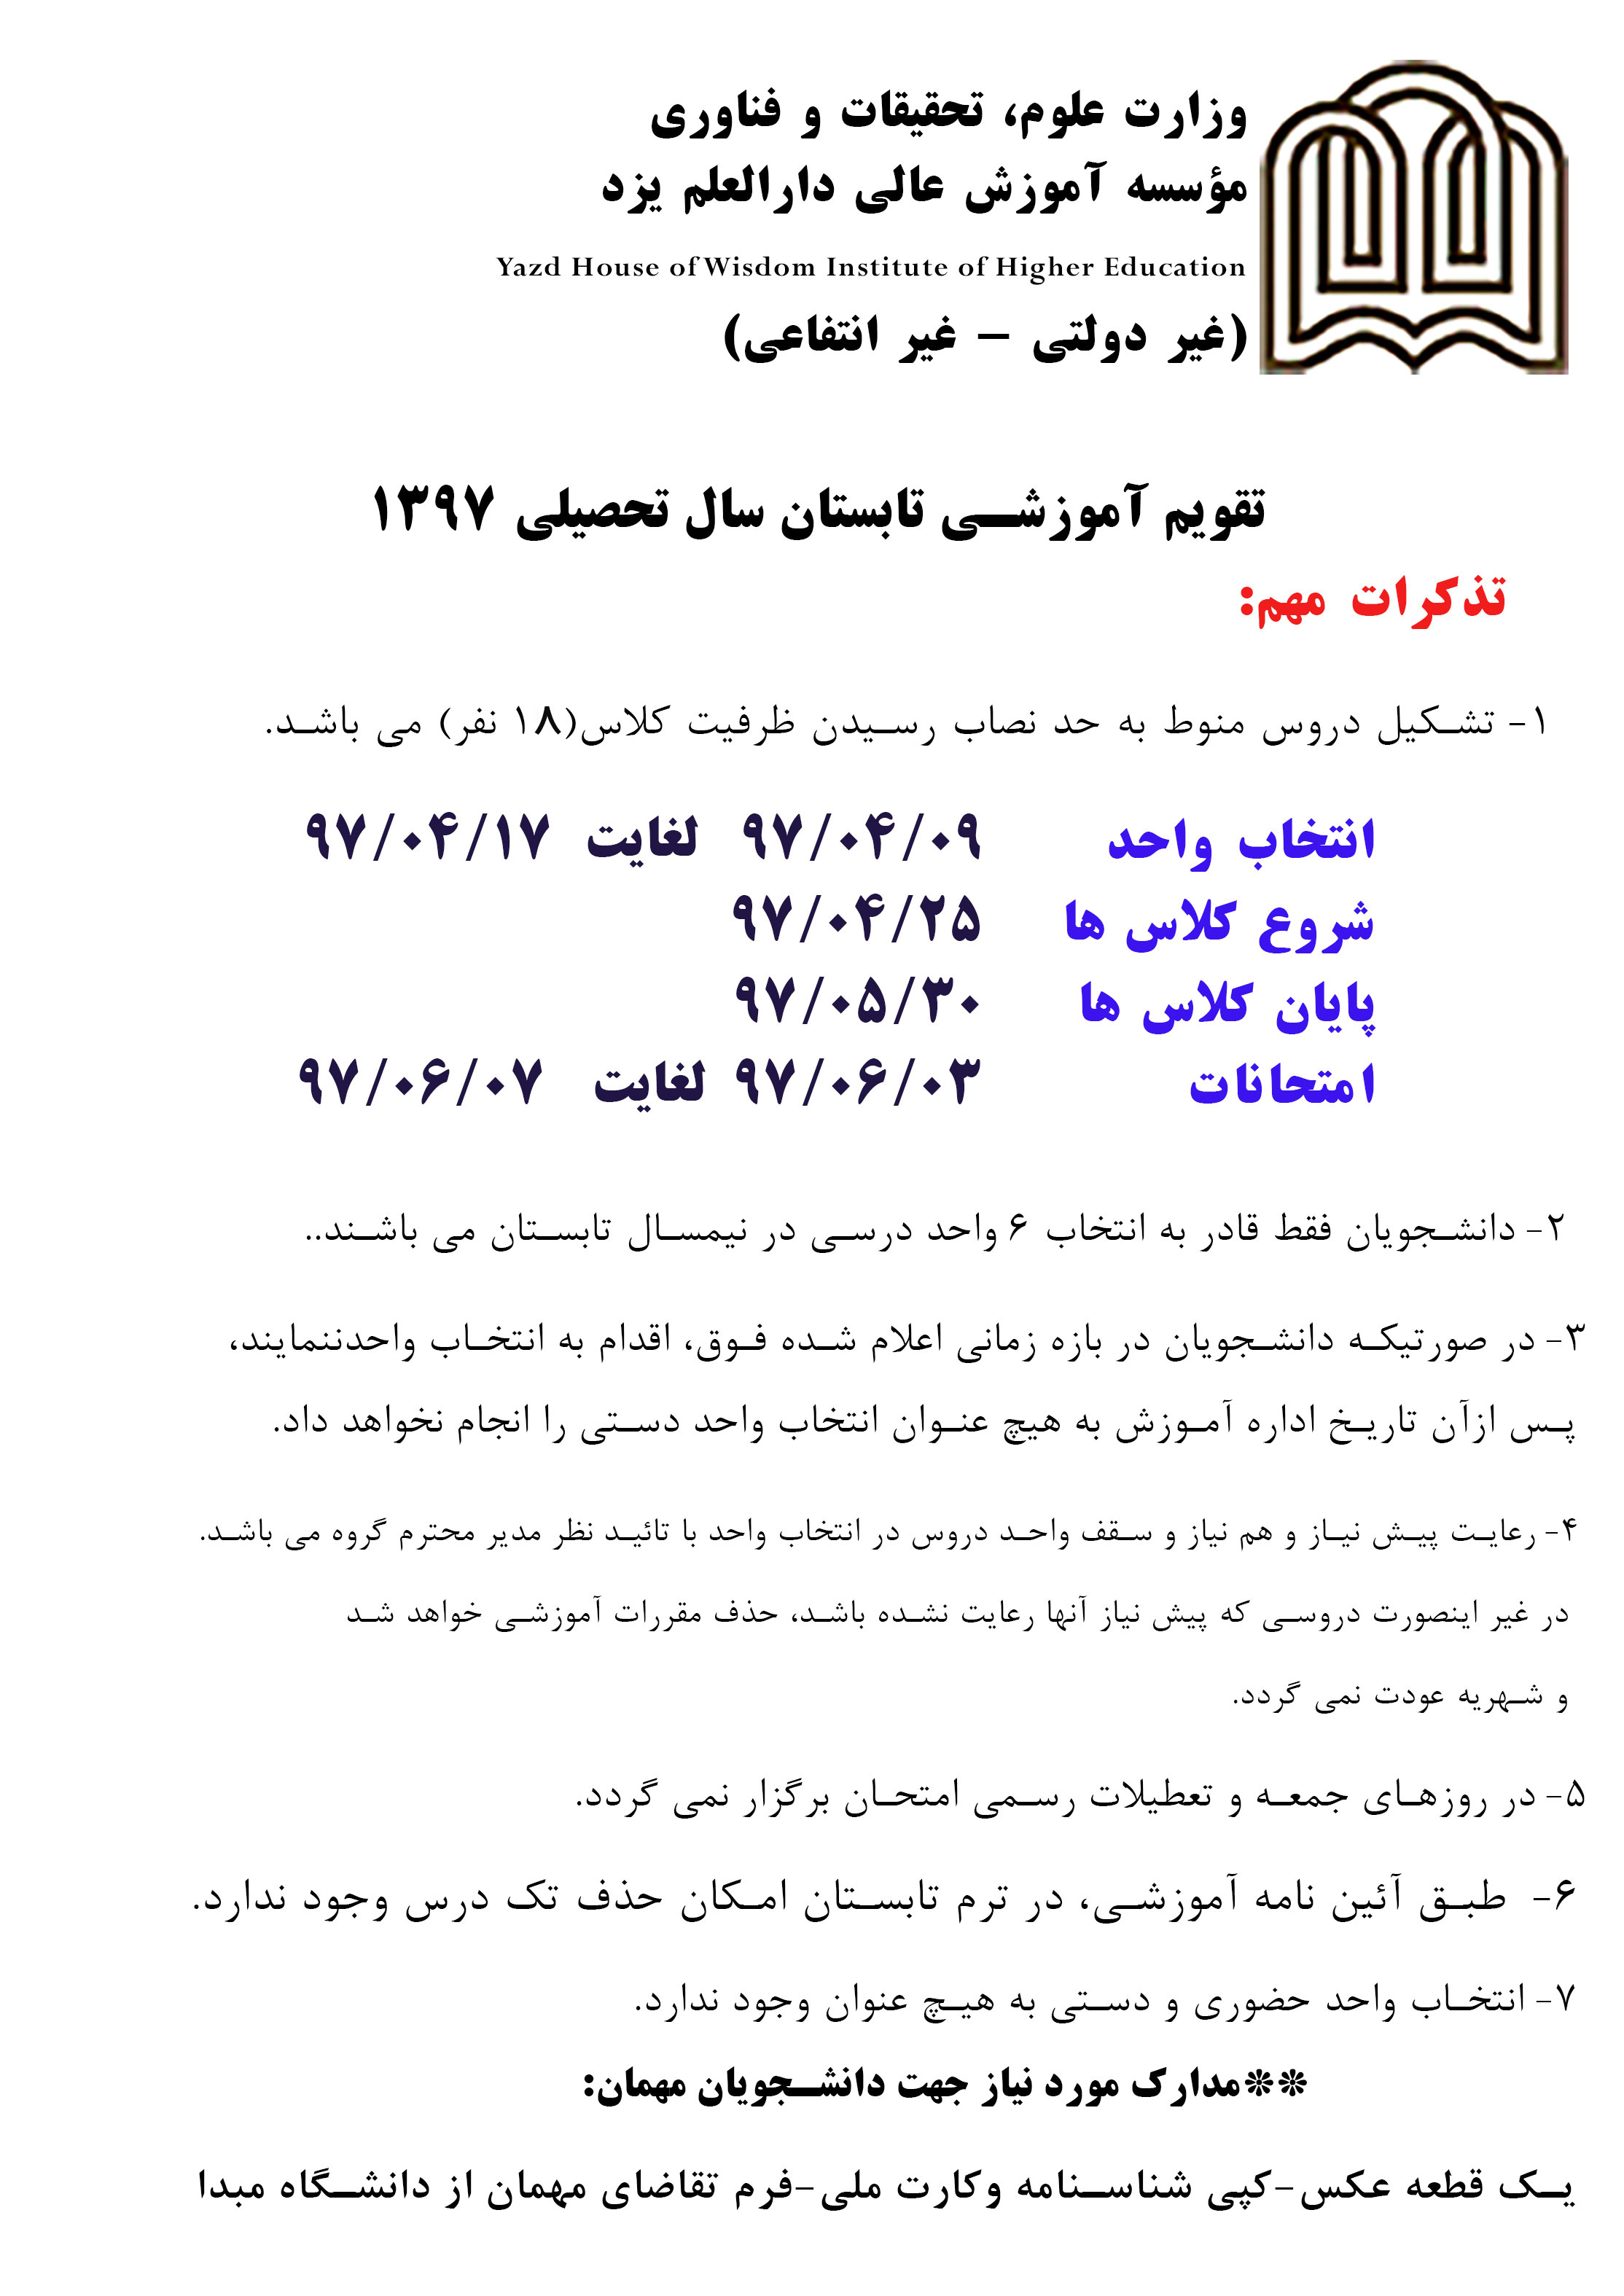 جزئیات برگزاری ترم تابستان ۹۷ دانشگاه دارالعلم یزد